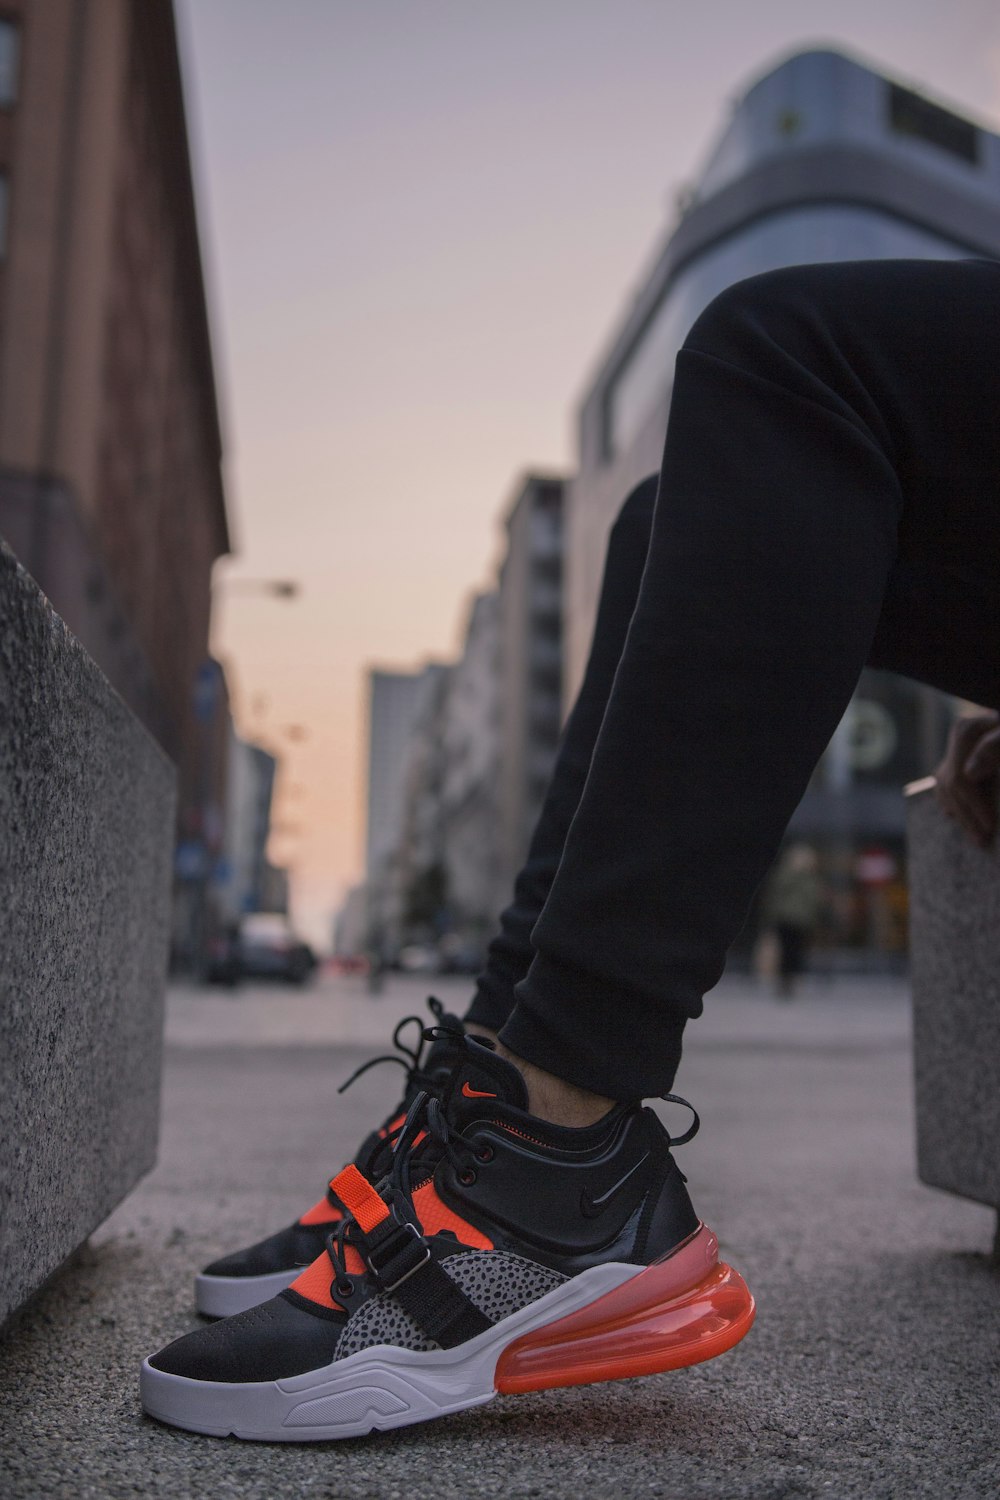 Foto zum Thema 검정색과 회색으로 된 Nike Air Max 270 신발을 신고 있는 사람 – Kostenloses Bild  zu Warschau auf Unsplash